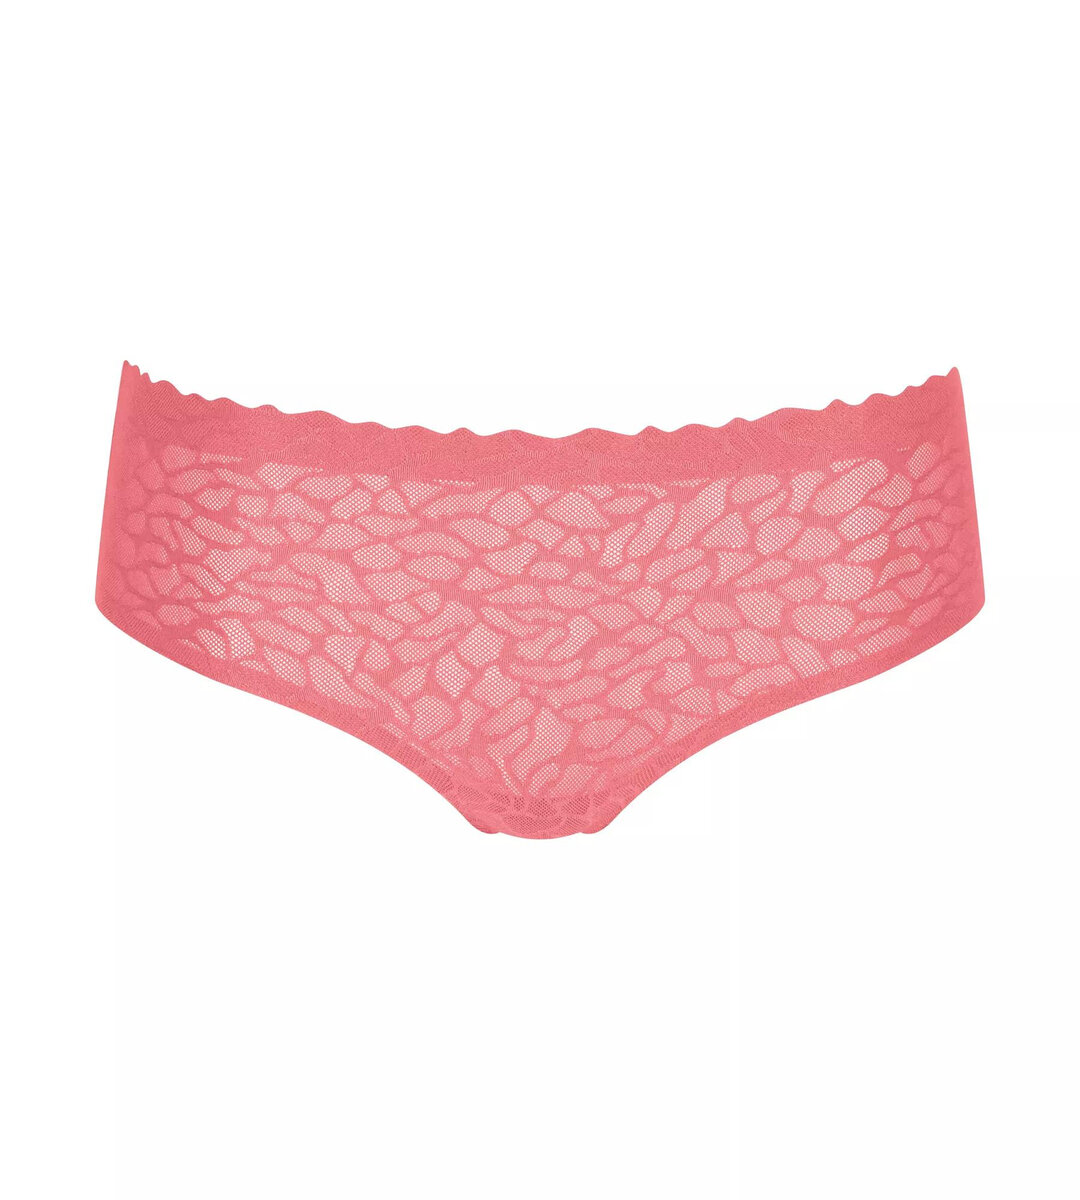 Bezešvé dámské kalhotky s krajkou Zero Feel Lace Hipster - Růžové - Sloggi, RED S i343_10211260-6402-S